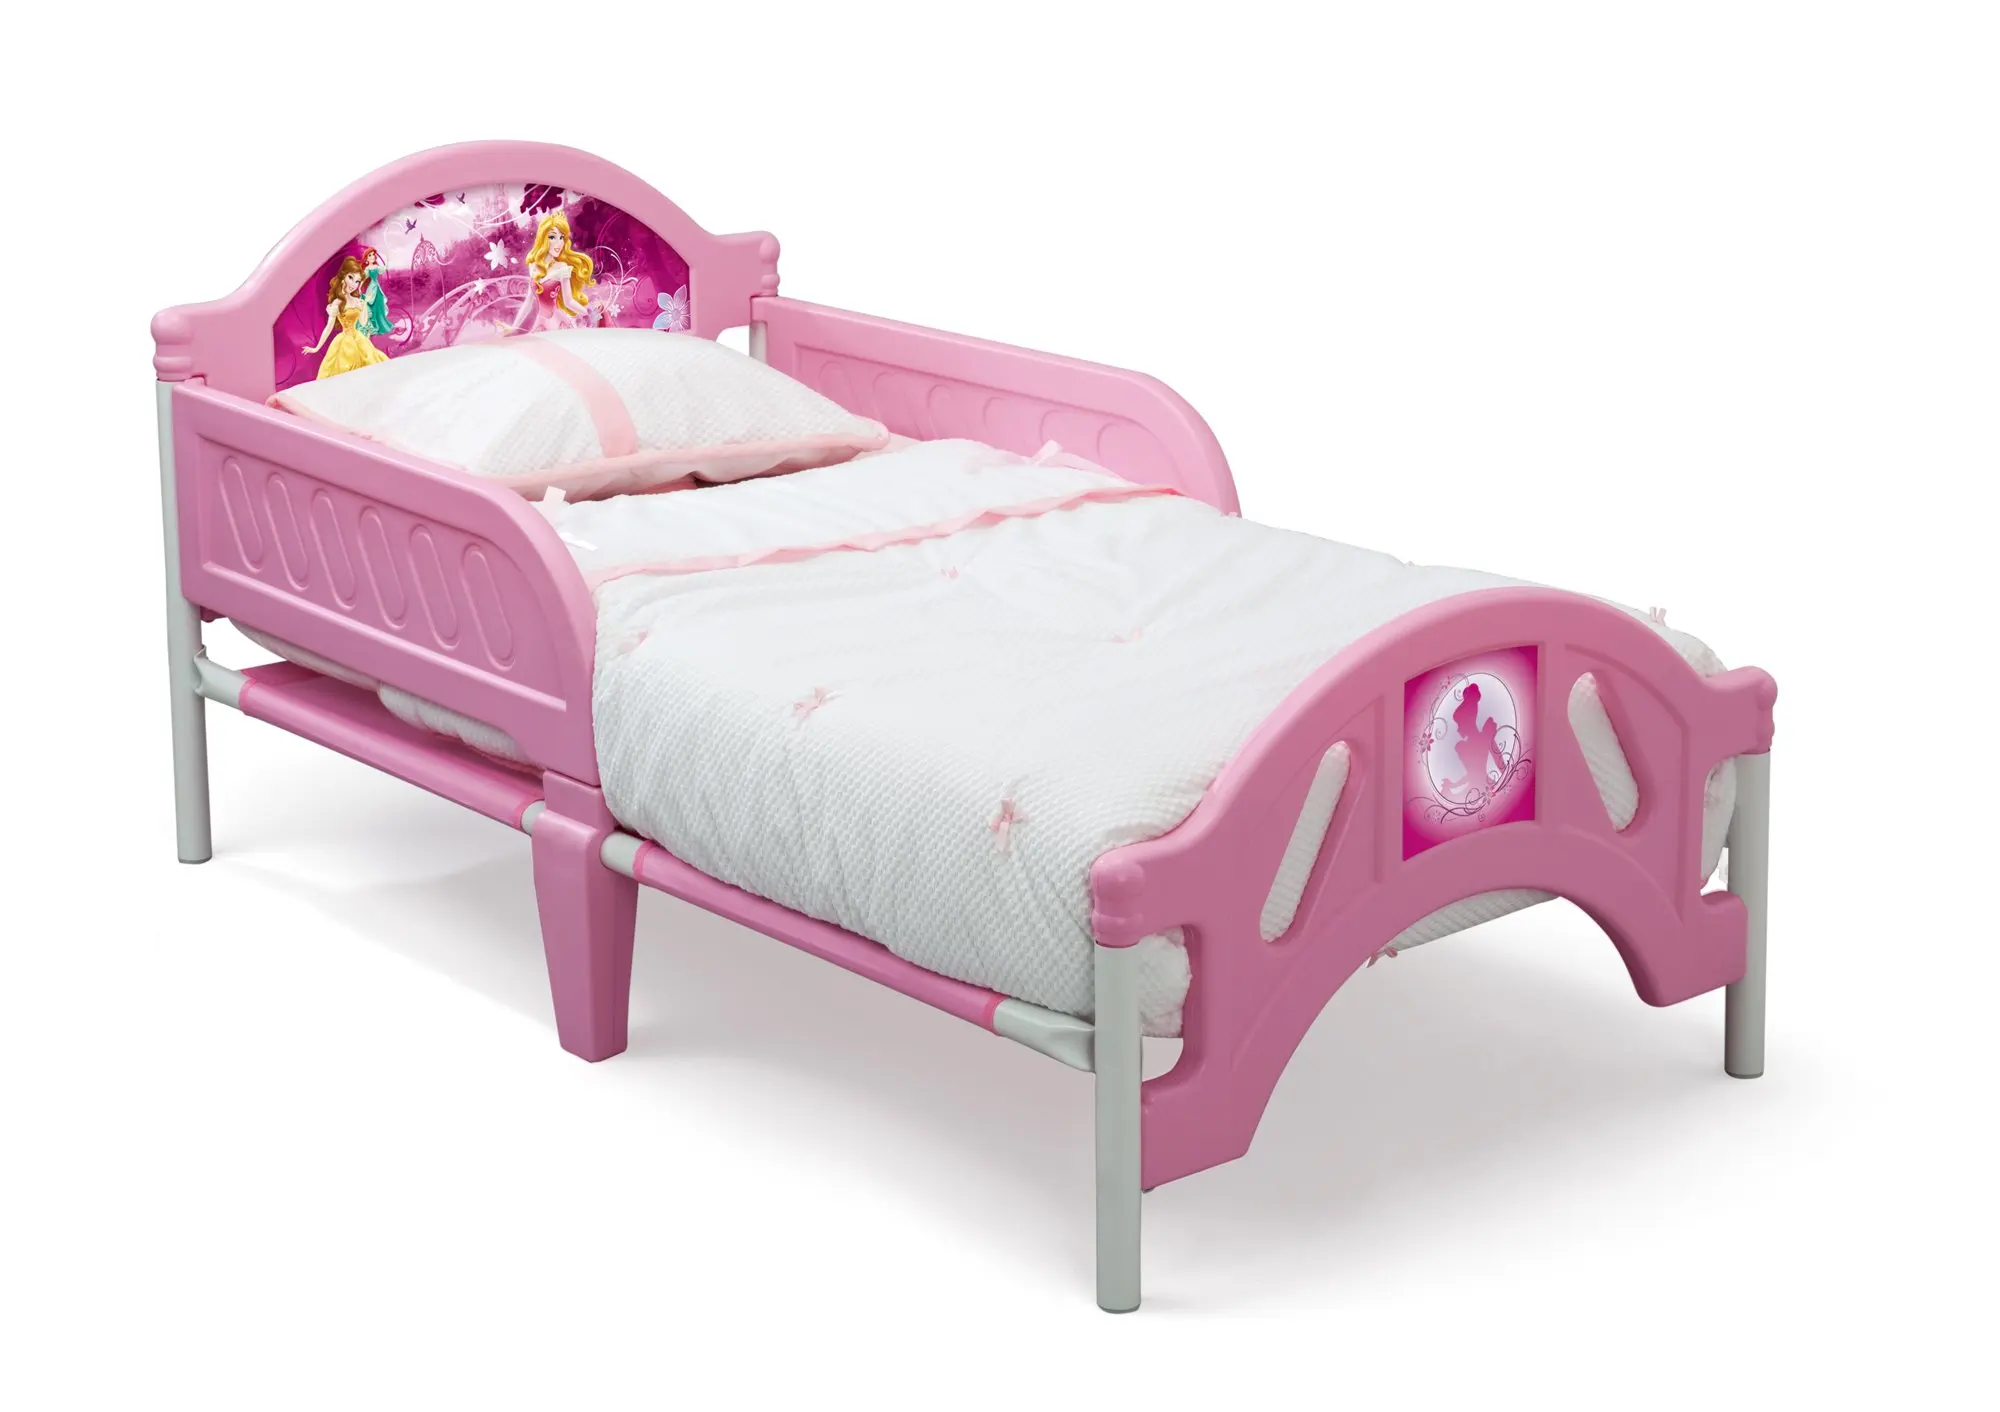 Кровать от 3х лет. Кровать для принцессы хофф. Хофф кровать детская принцесса. Кроватка для девочки от 3 лет. Кровать для девочки 4 года.